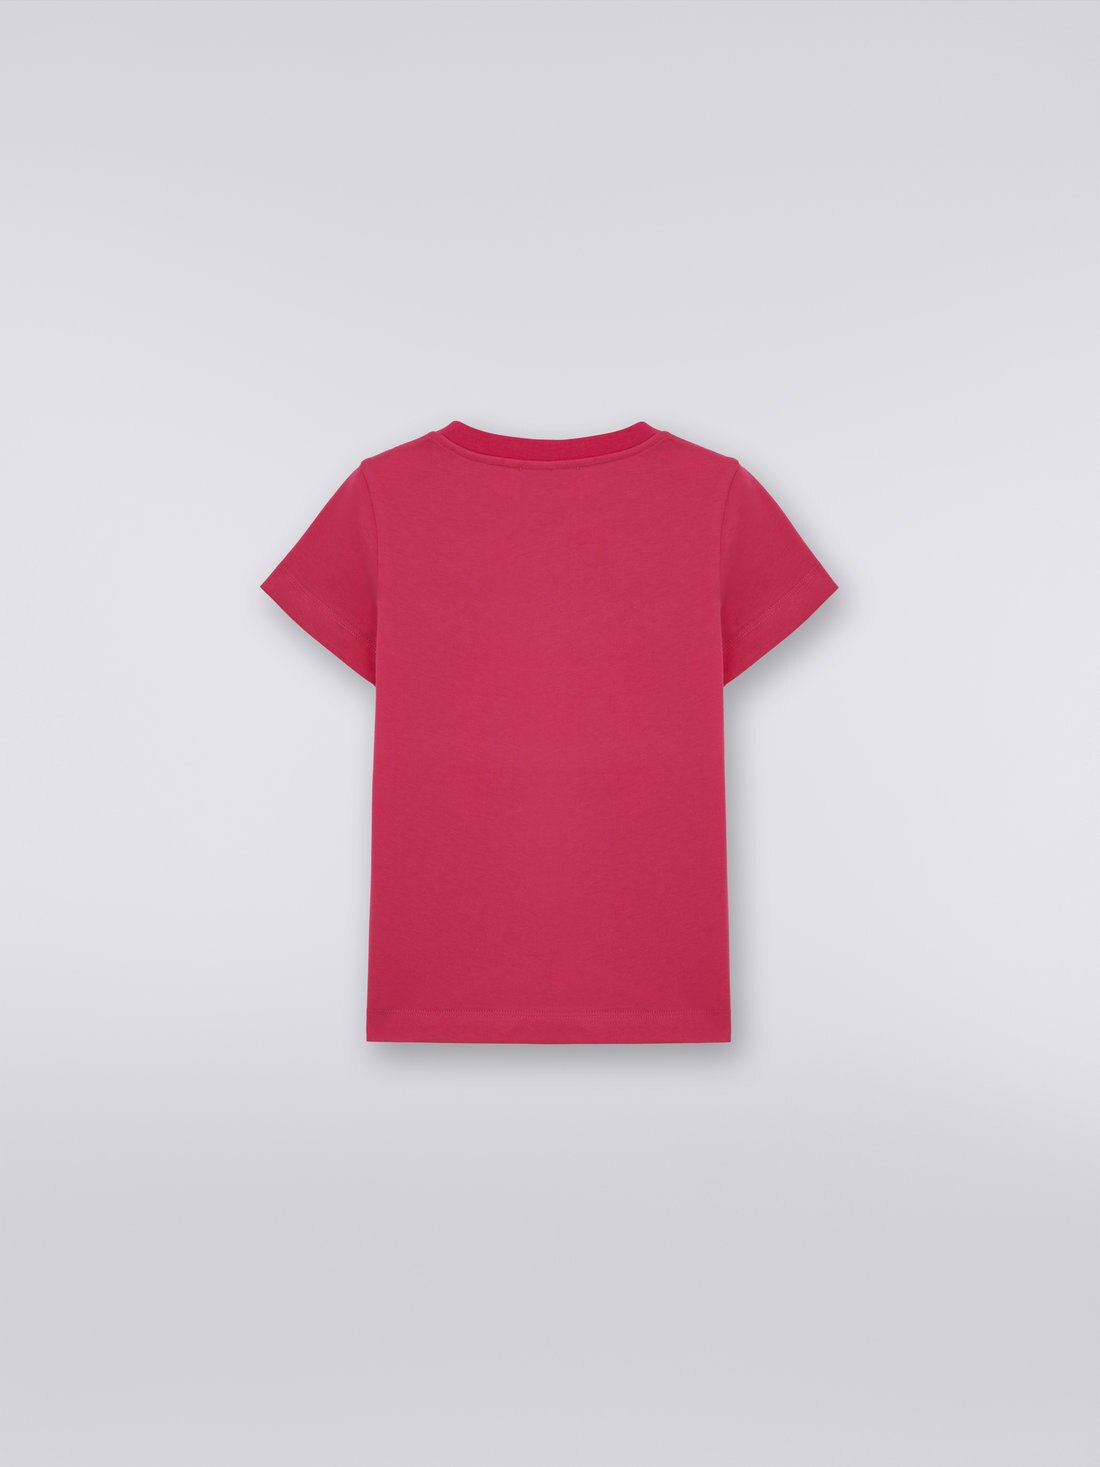 Cotton T- shirt with rhinestone logo, Multicoloured  - KS23WL0OBV00E0S30CI - 1